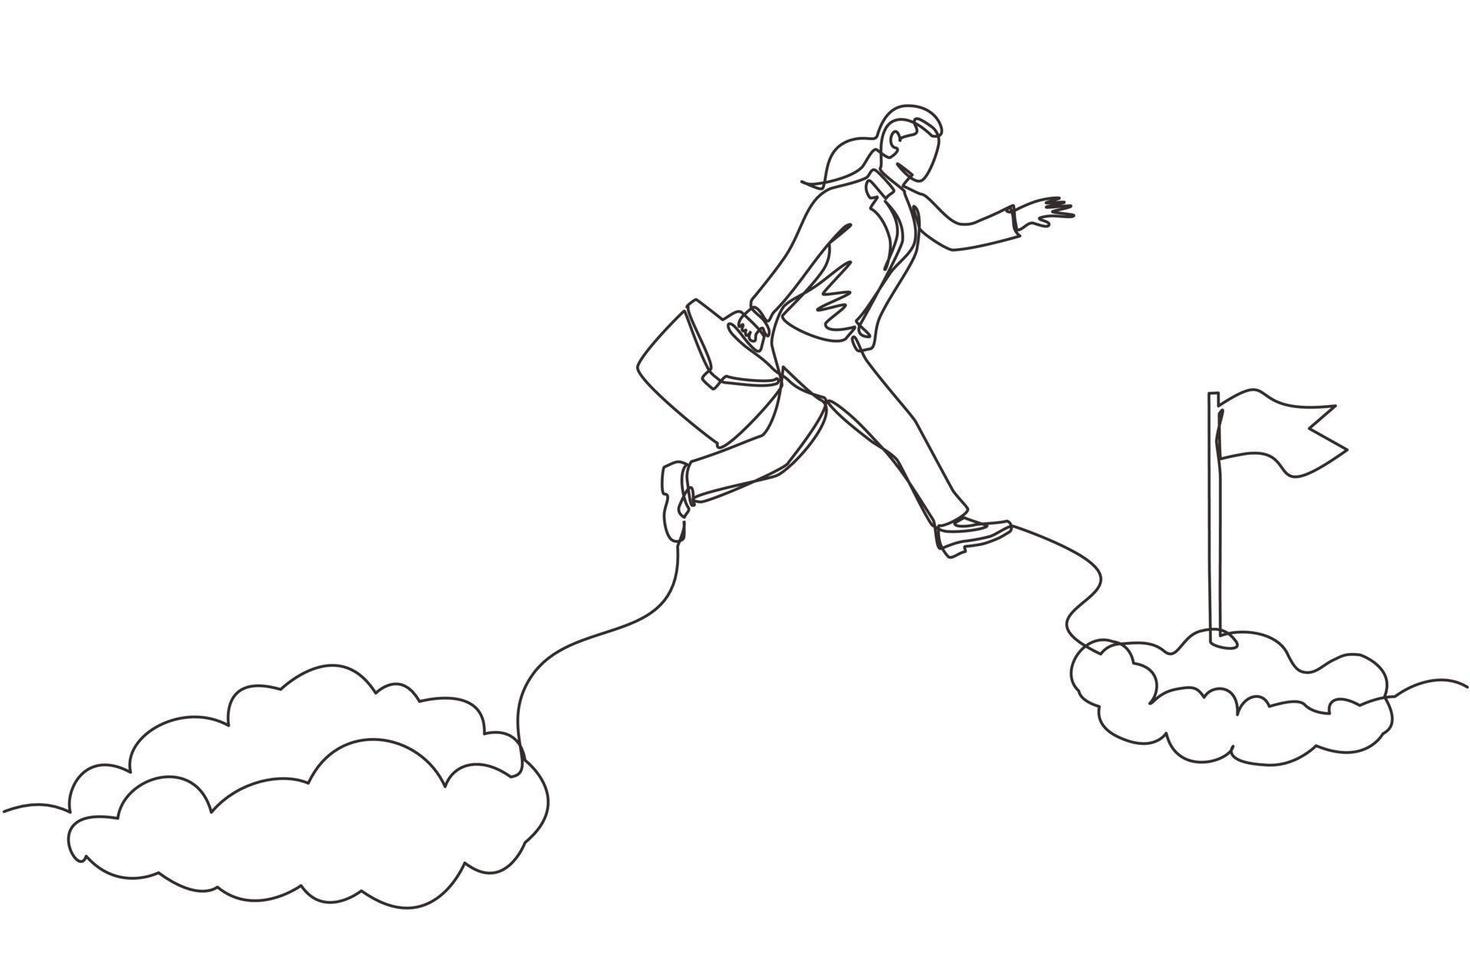 único desenho de uma linha, empresária corajosa destemida, arrisca-se saltando sobre nuvens para alcançar seu alvo ou bandeira de sucesso. desafio de sua carreira. ilustração em vetor gráfico de desenho de linha contínua